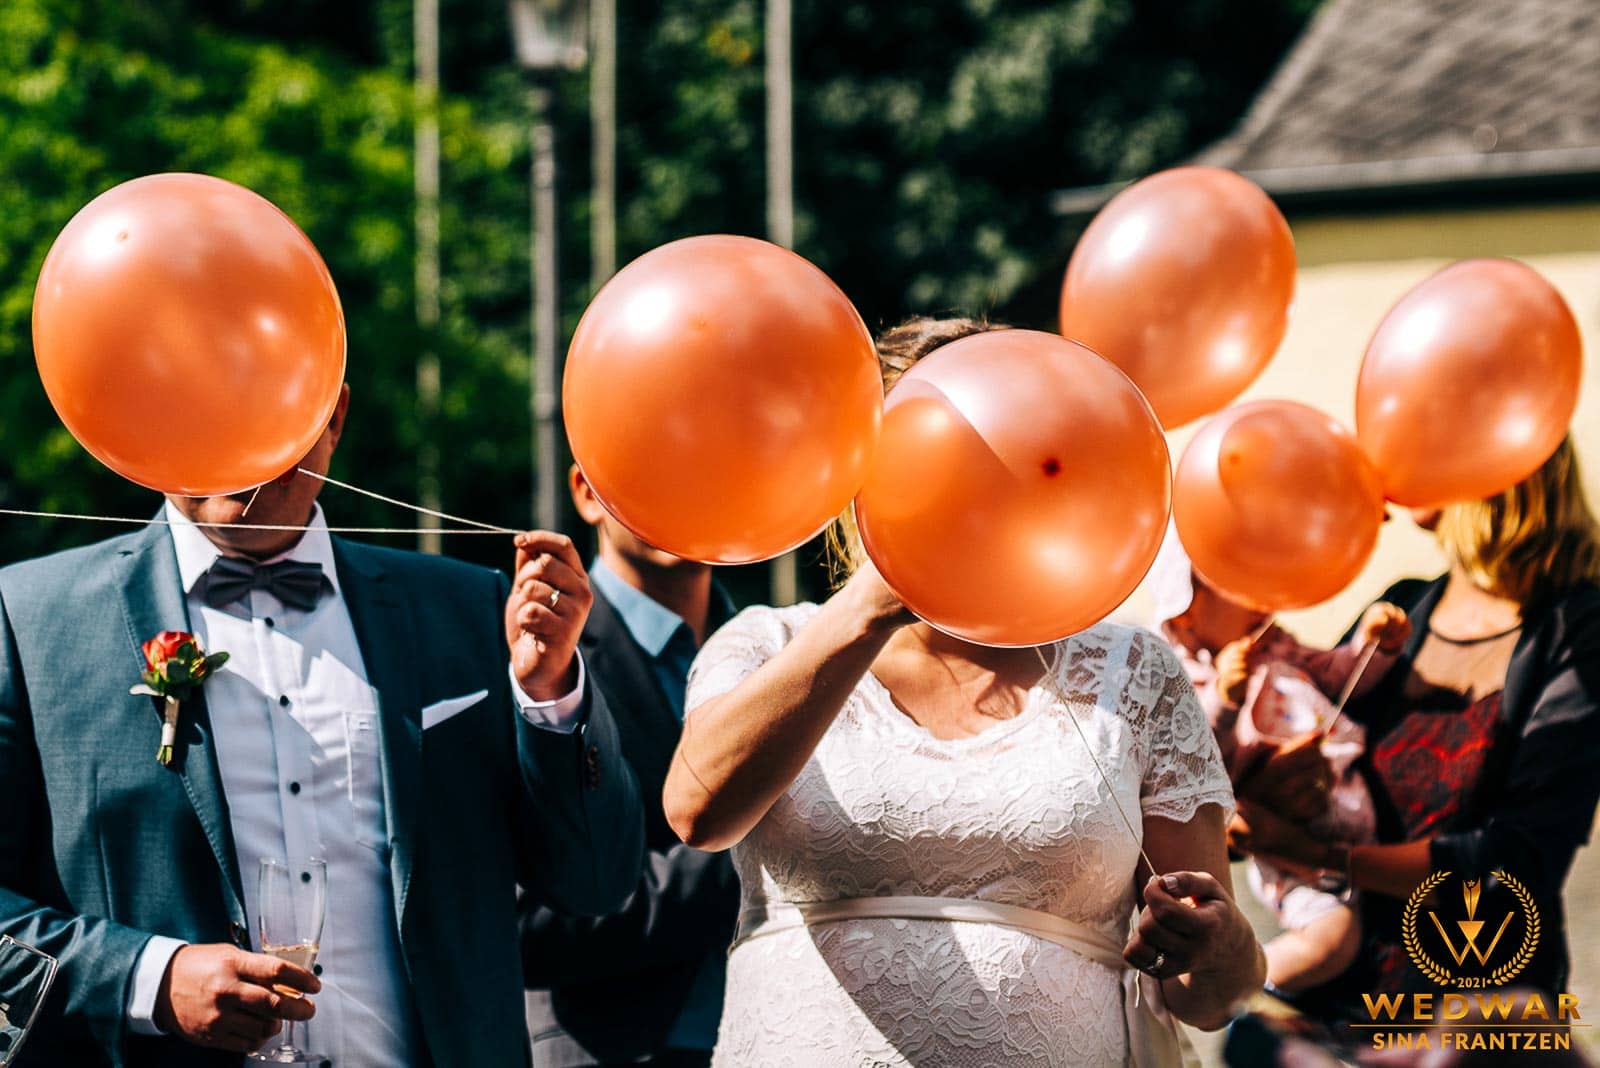 Ballons vor den Gesichtern einer Hochzeitsgesellschaft - Gewinnerbild Wedwar WAC-18